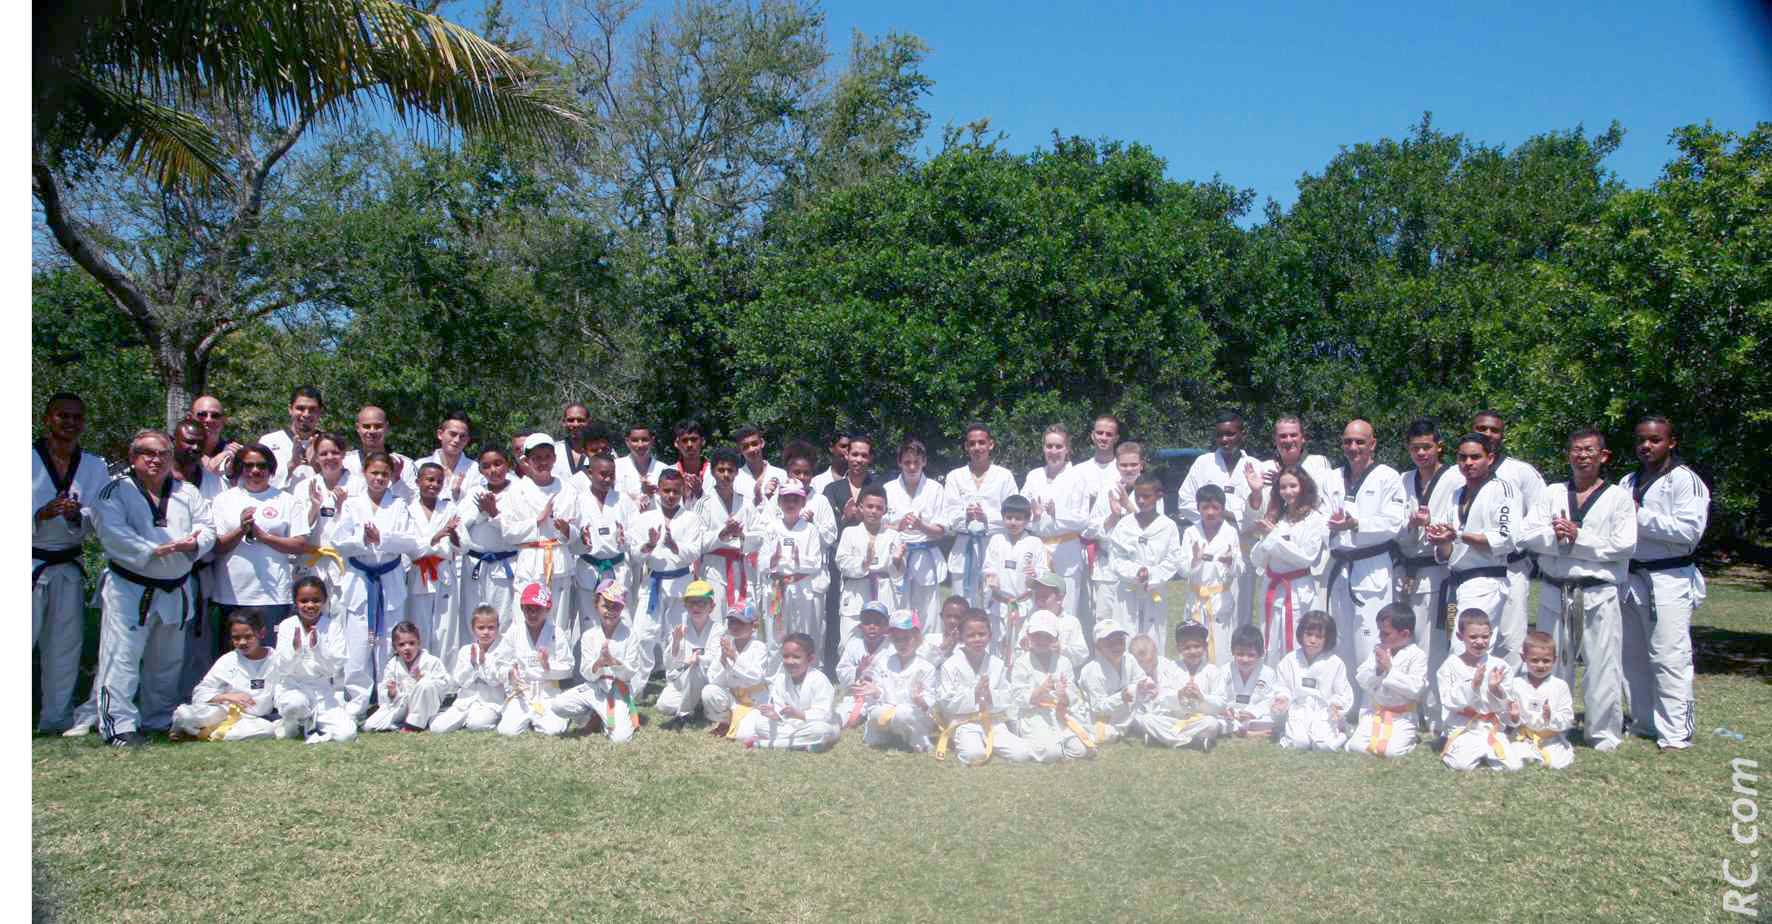 Le Taekwondo Club du Sud s'est mobilisé pour ces 30 ans à Saint-Louis. Neuf  structures de Taekwondo sont à l'origine du club de Saint-Pierre, à savoir les clubs de l'Entre-Deux, des Avirons, du Tampon, de la Petite-Ile, de Saint-Joseph, de Saint-Paul et la section de Montvert